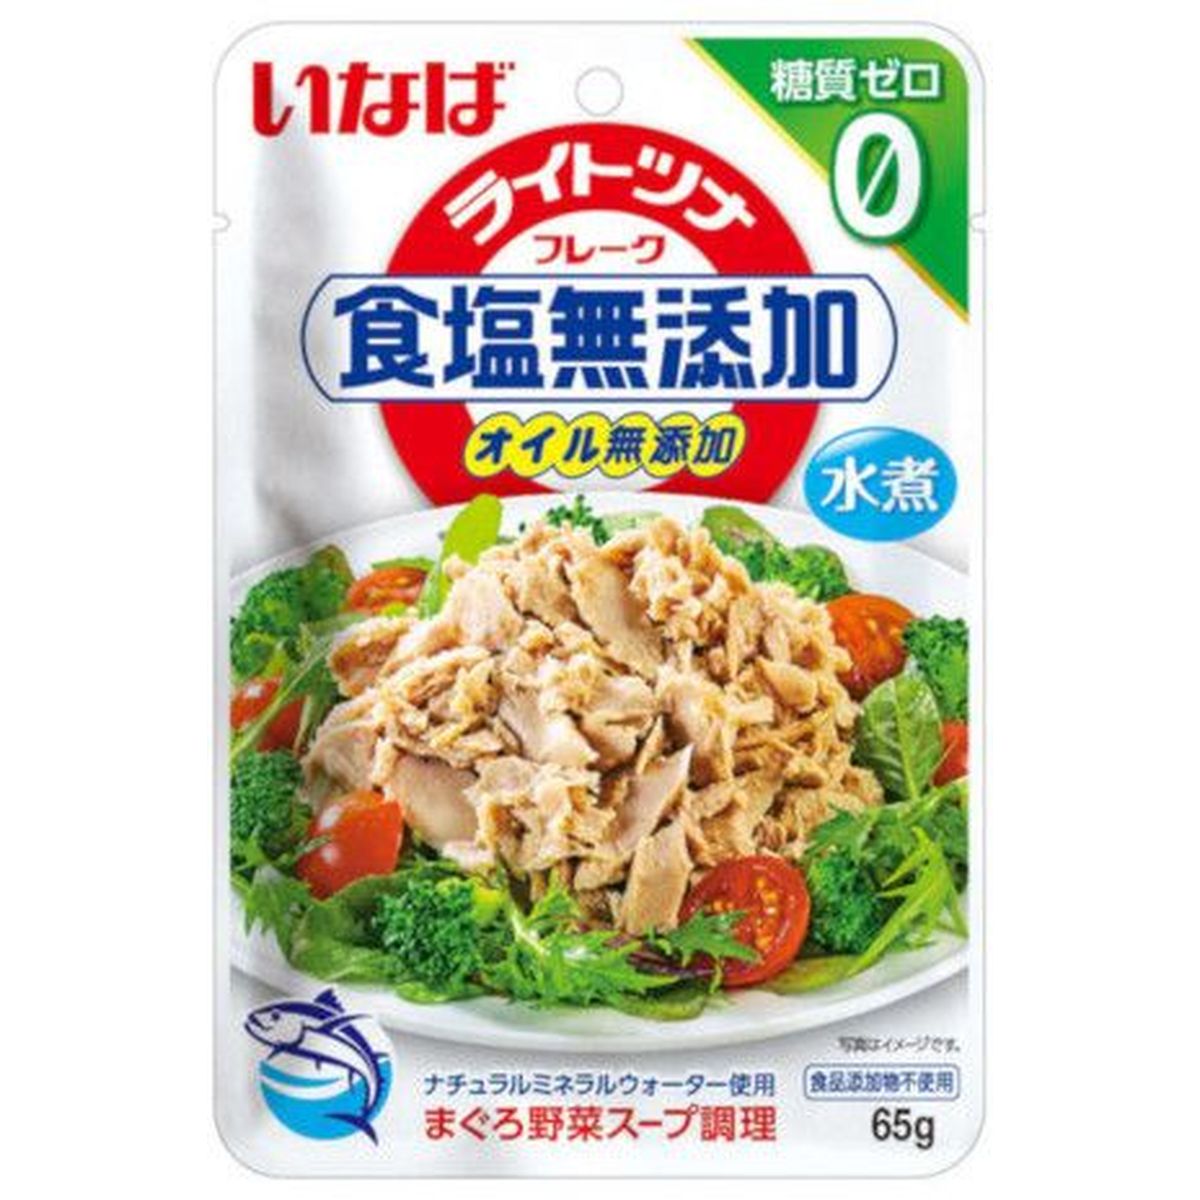 【12個入リ】イナバ ライトツナ 食塩無添加 糖質ゼロ 65g